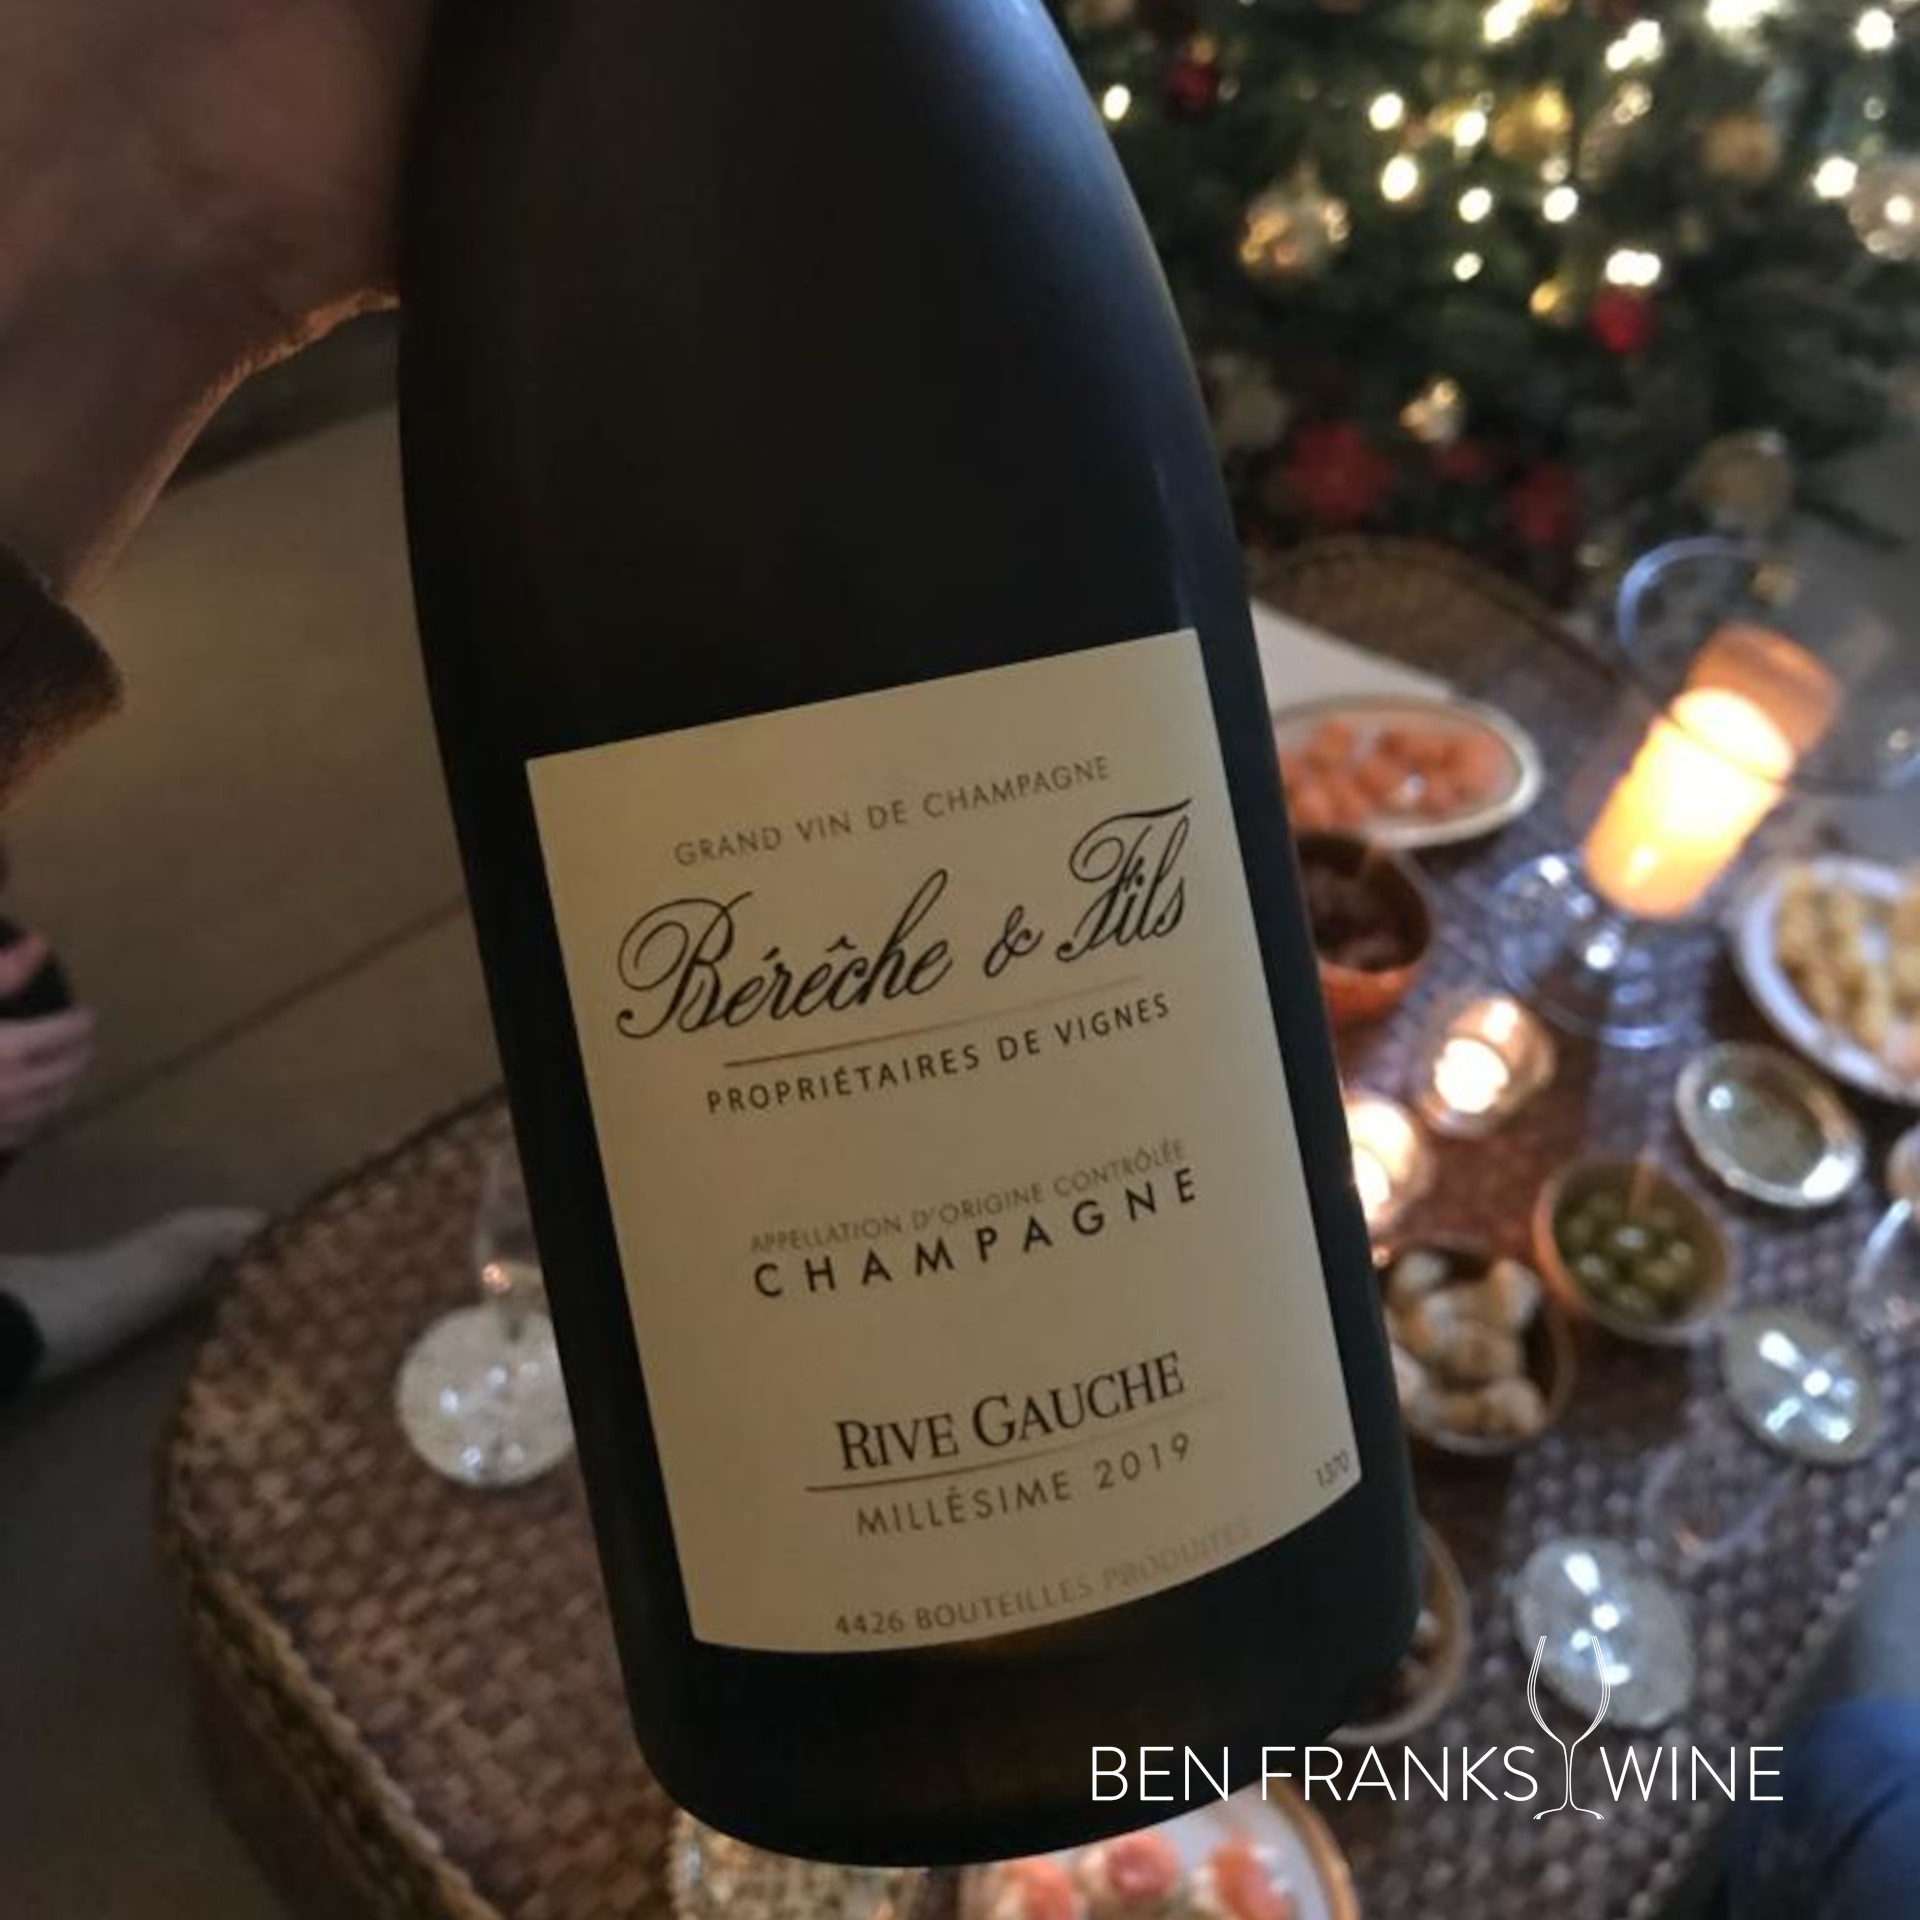 Bereche et Fils Champagne River Gauche Blanc de Noirs Extra Brut Millesime 2019 bottle label.